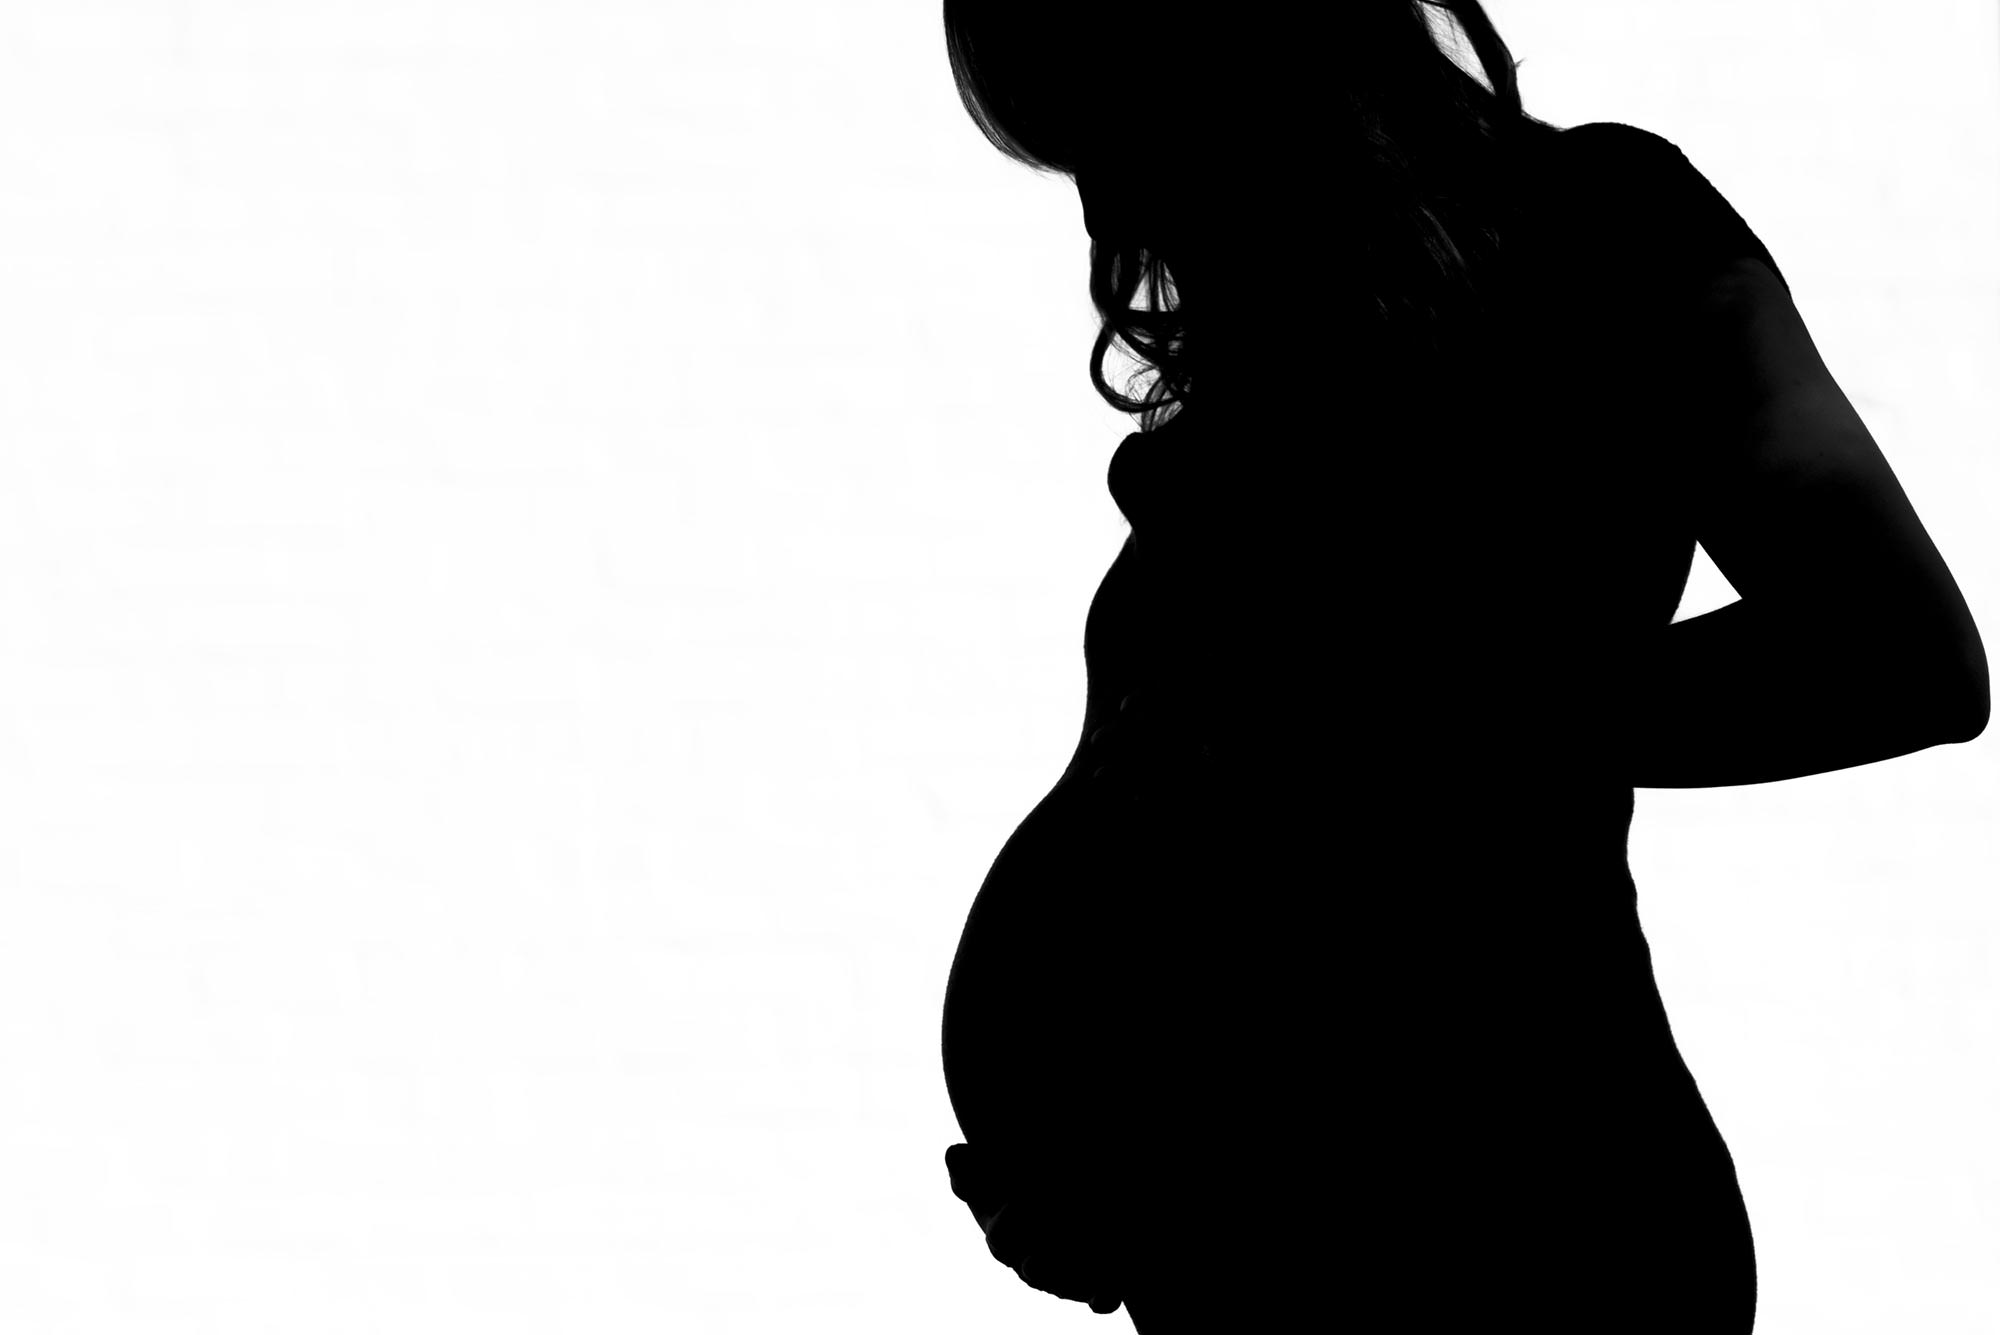 Lauren's pregnancy silhouette